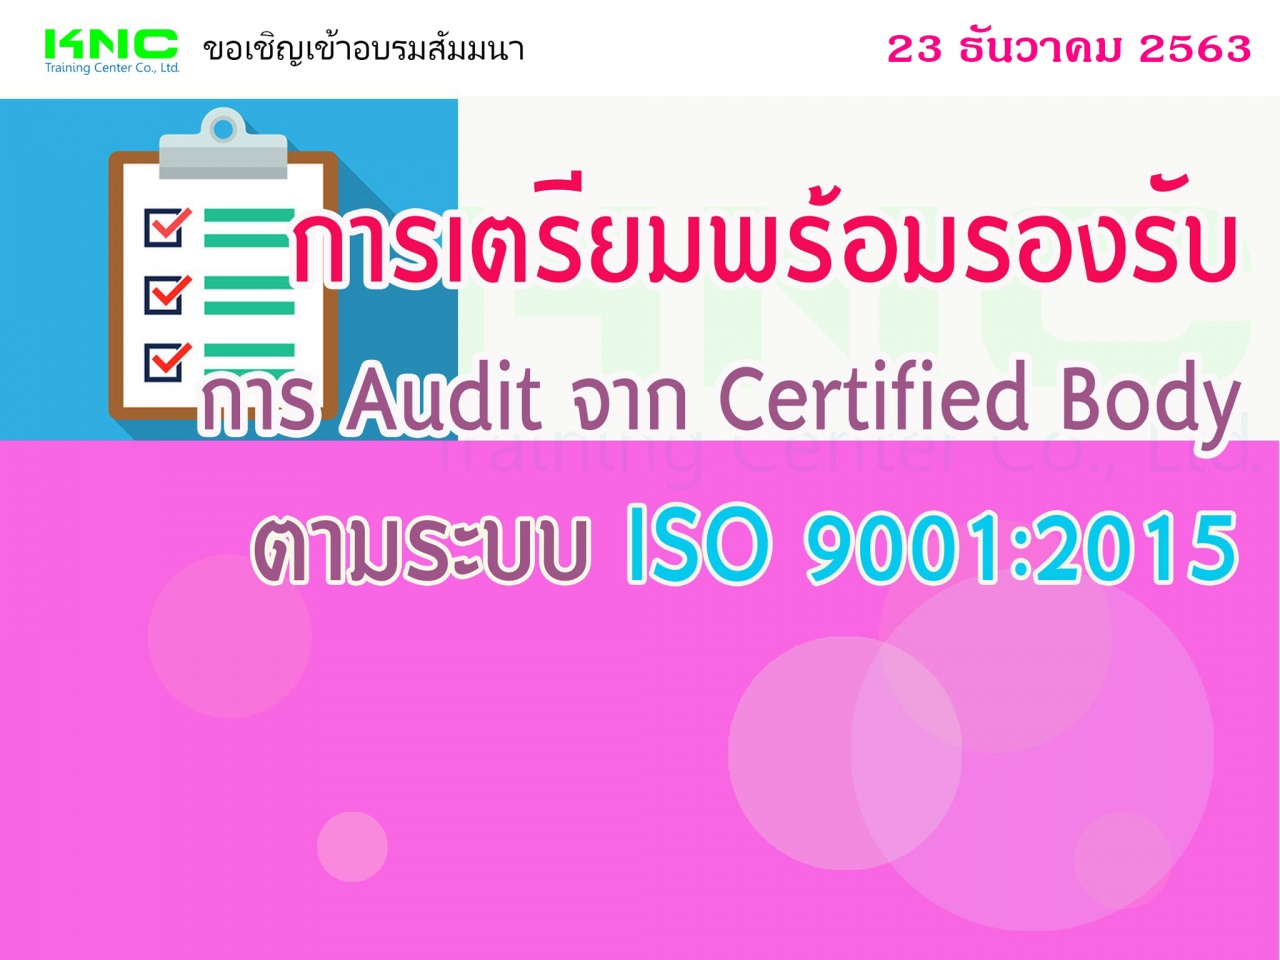 การเตรียมพร้อมรองรับการ Audit จาก Certified Body ตามระบบ ISO 9001:2015